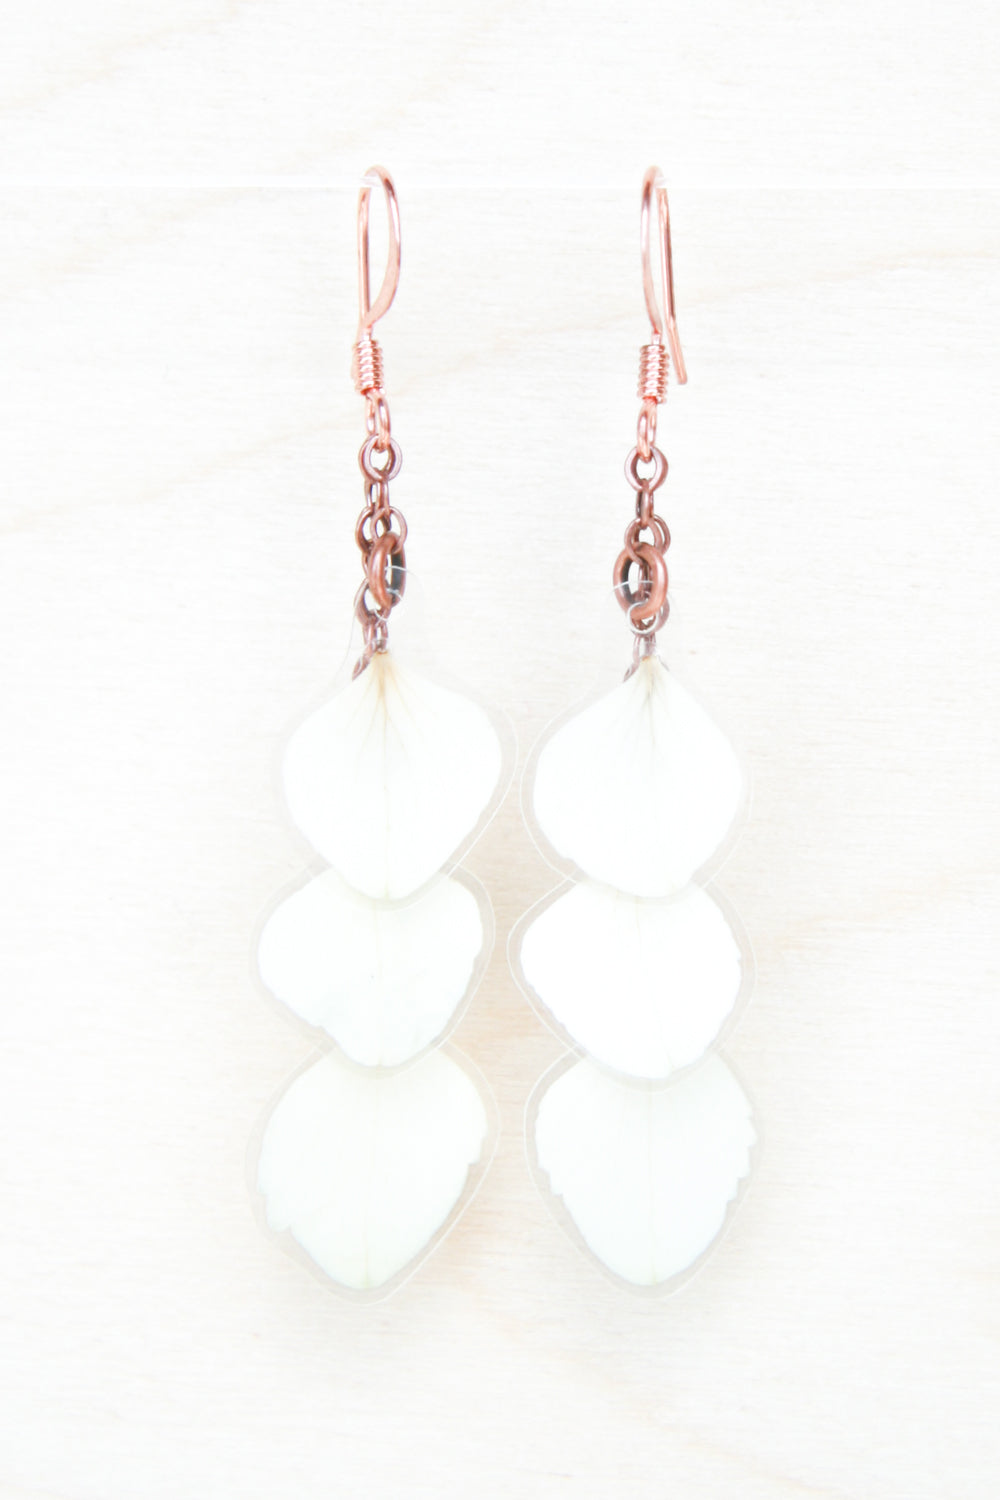 White Hydrangea Pressed Flower Petal Earrings